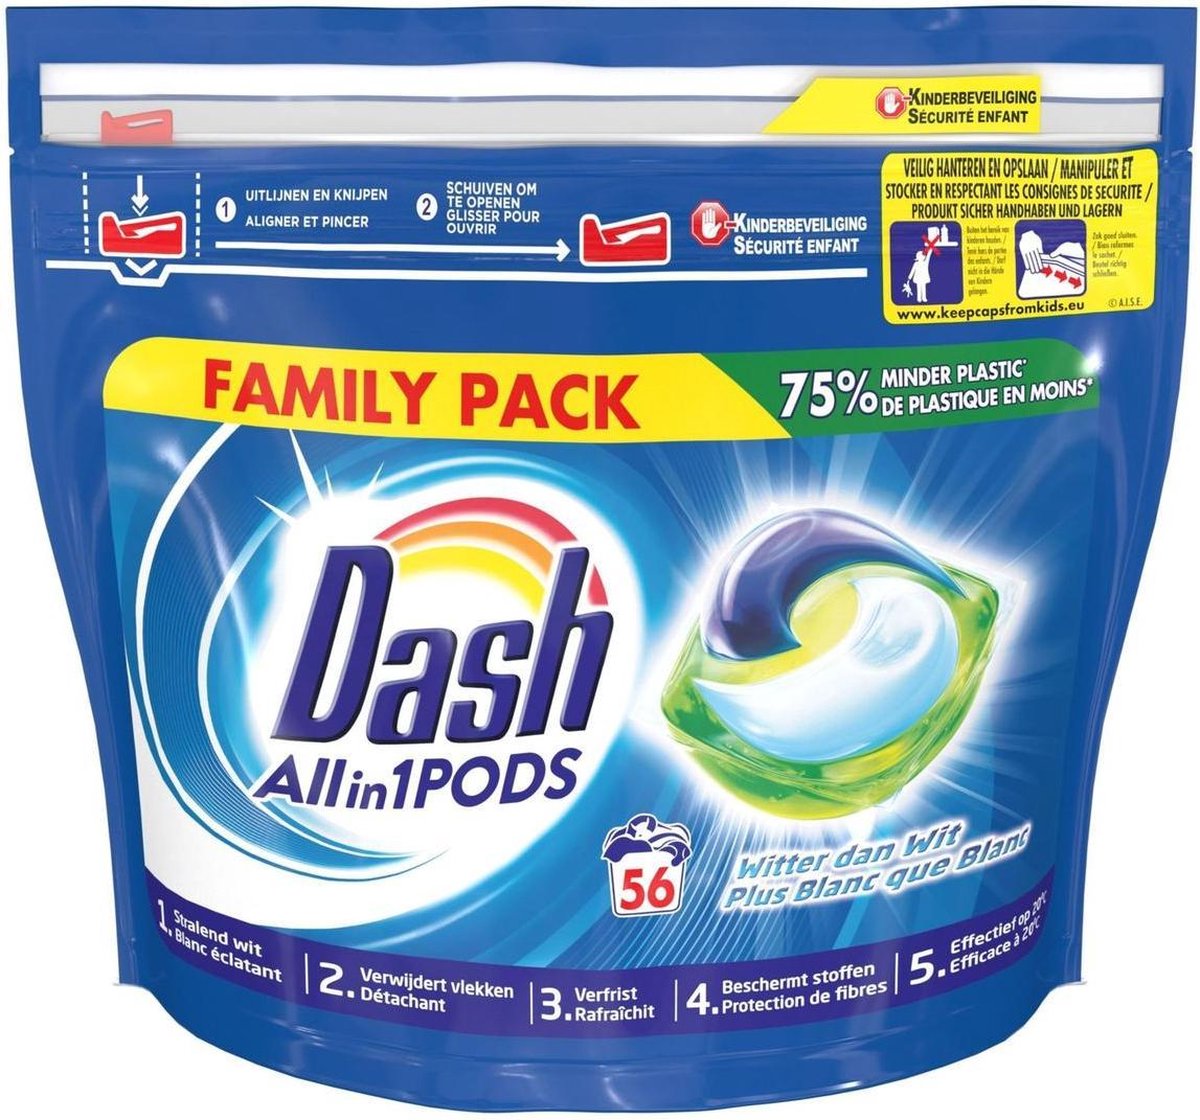 Dash All-in-1 Pods Capsules de lavage régulier 56 lavages | bol.com